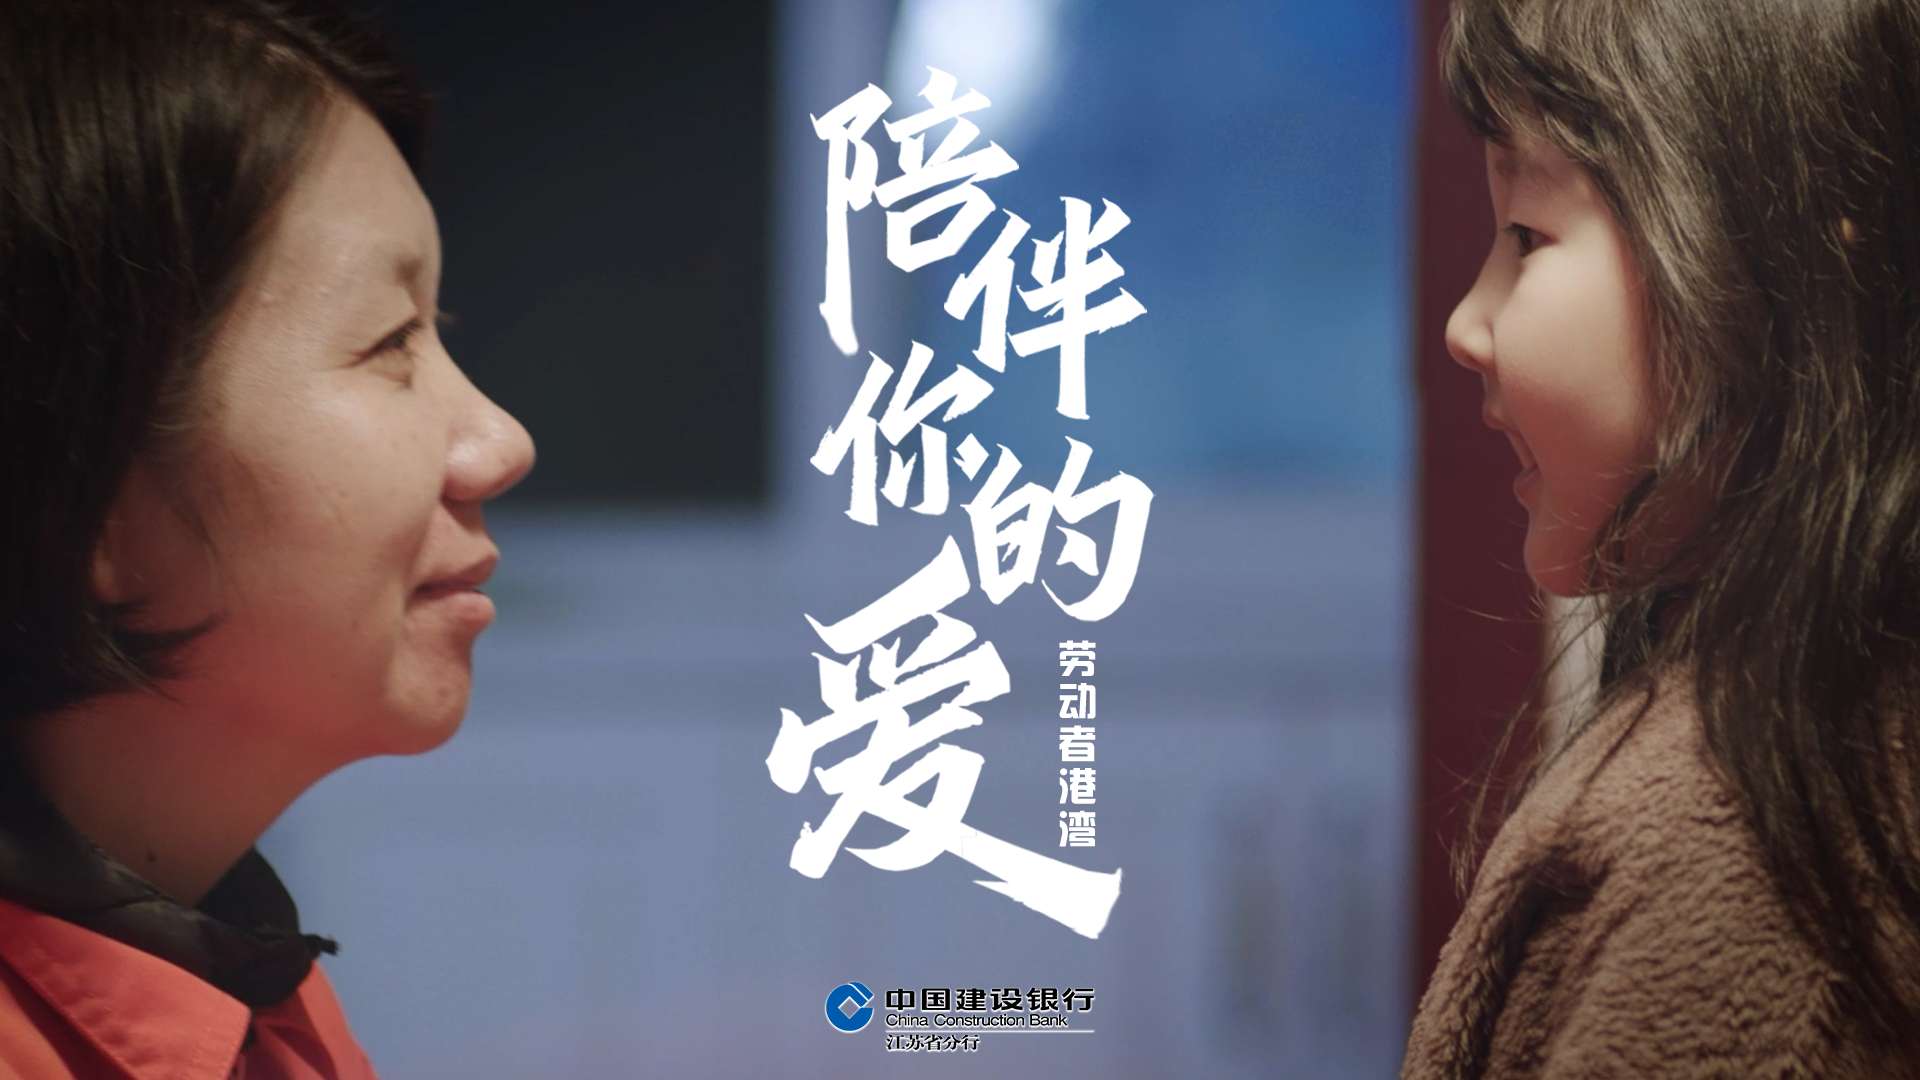 中国建设银行丨《陪伴你的爱》温情短片 2021劳动者港湾